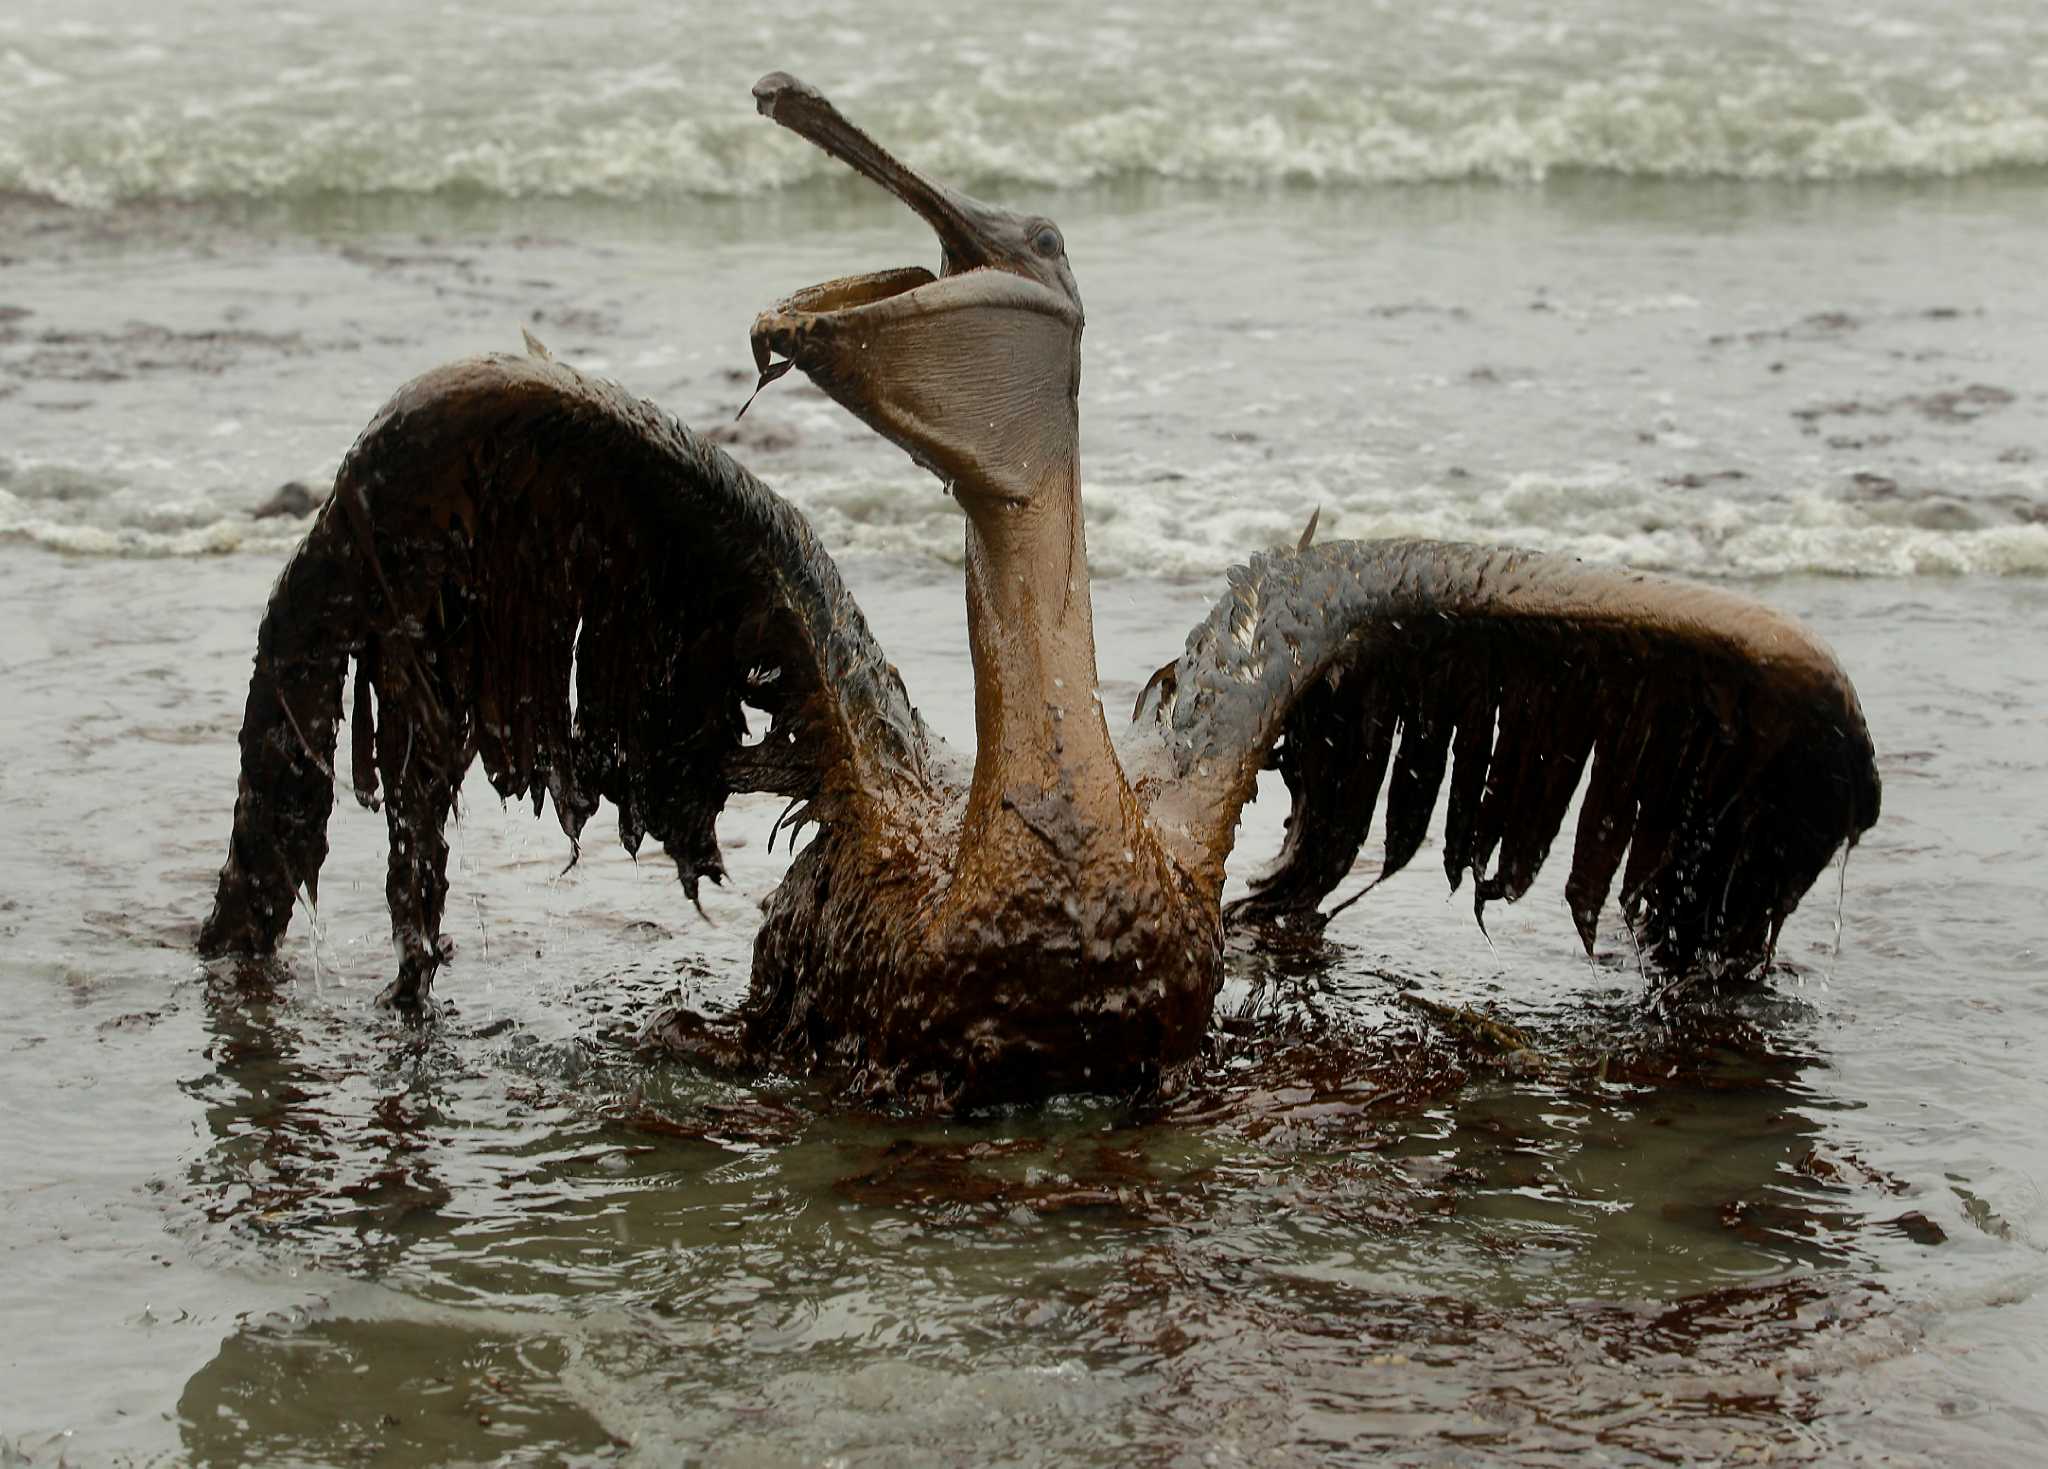 Bp oil spill essay help